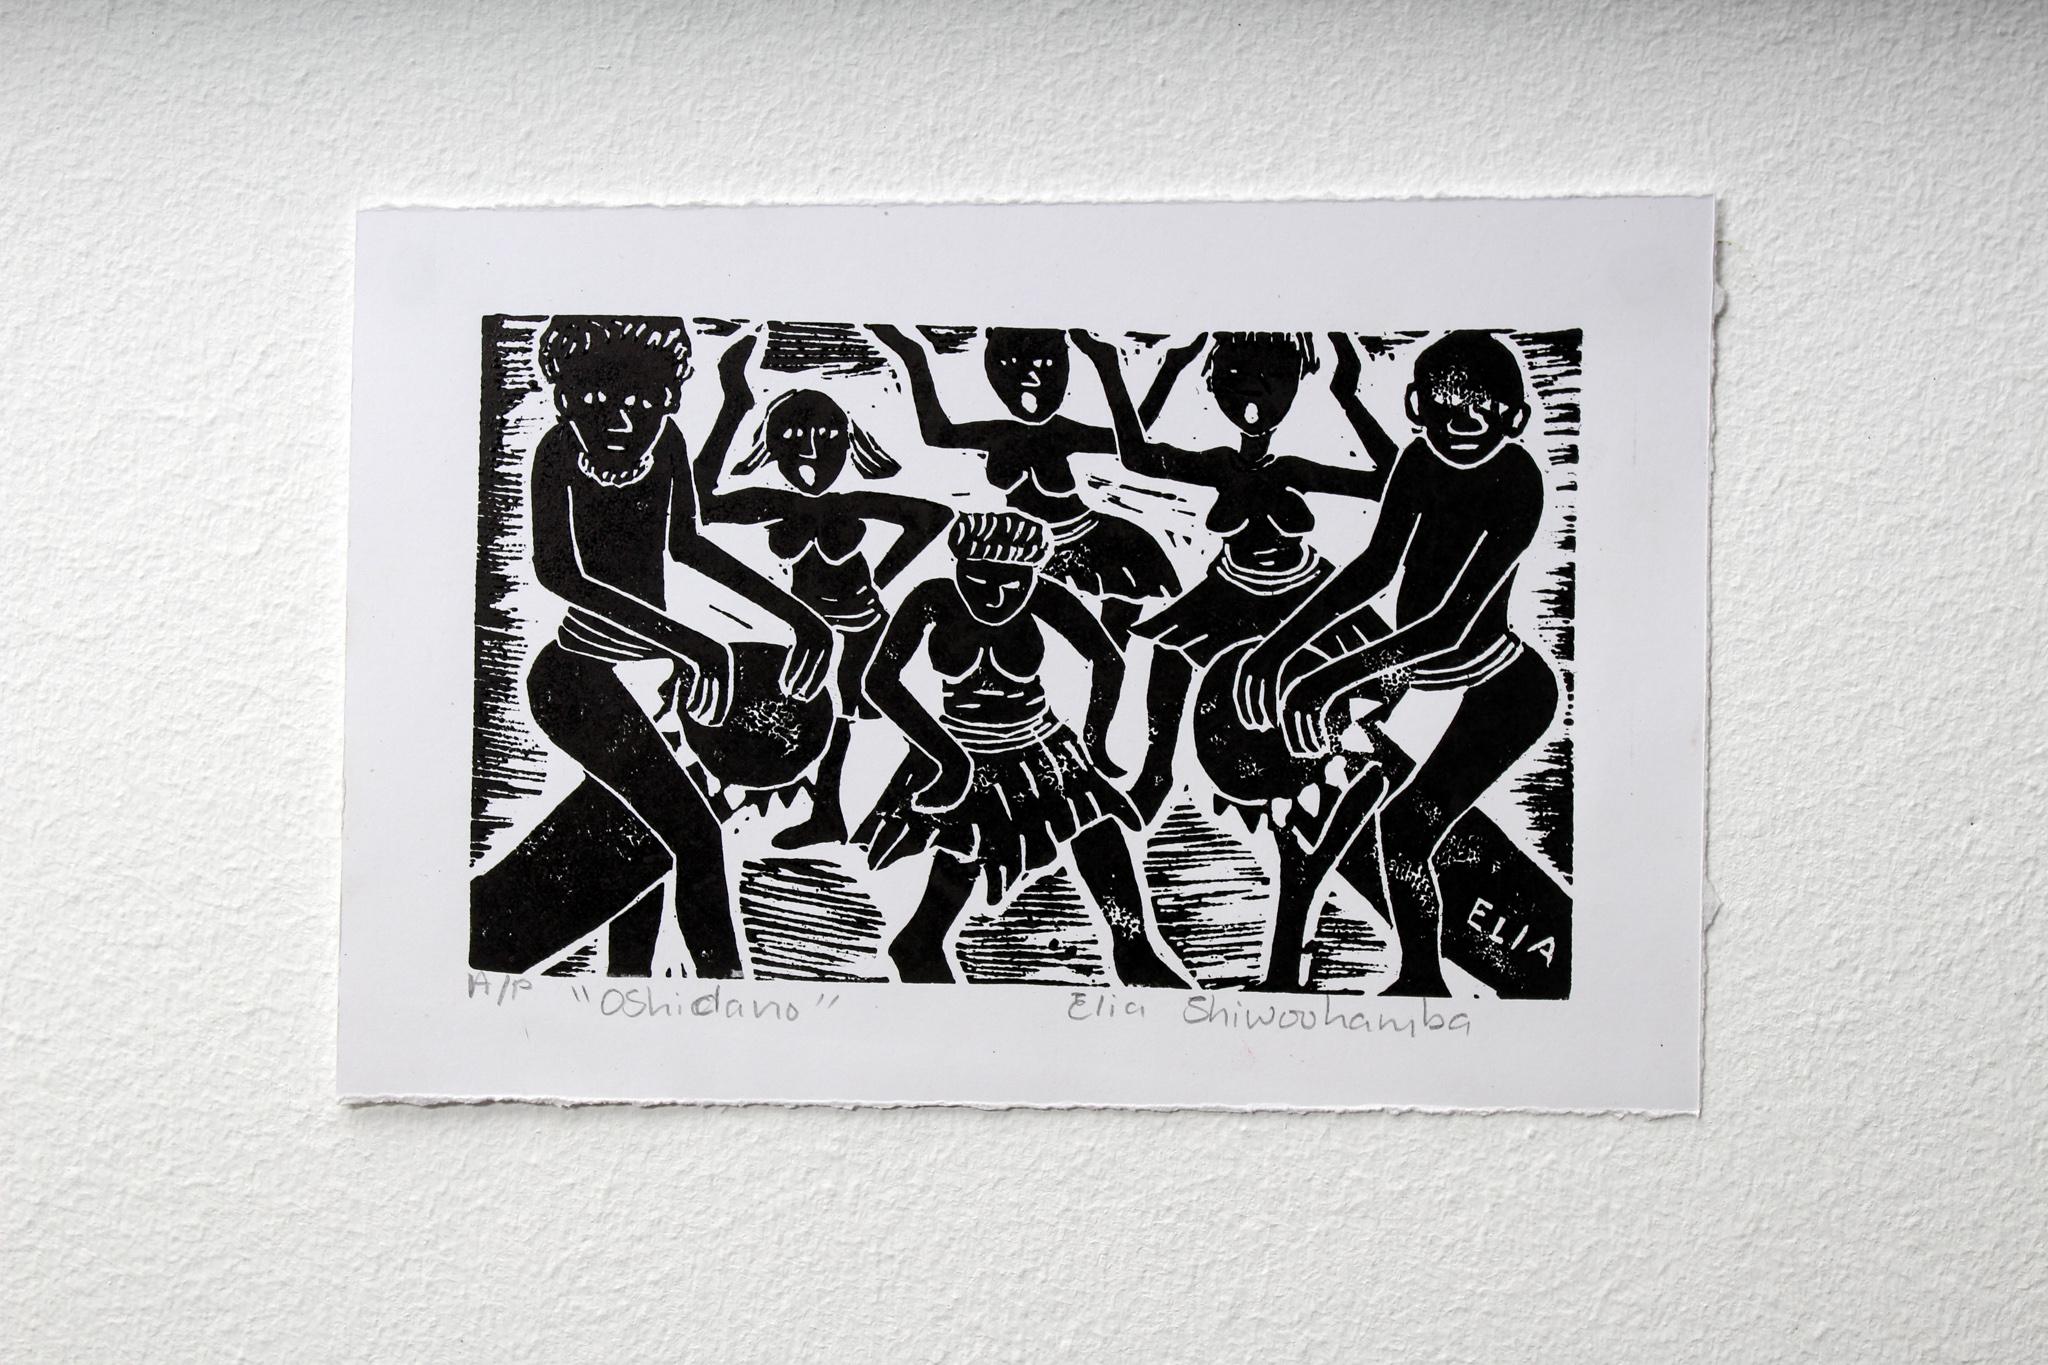 Oshidano, Linoleumdrucke auf Papier.

Elia Shiwoohamba wurde 1981 in Windhoek, Namibia, geboren. Im Jahr 2006 machte er seinen Abschluss am John Muafangejo Art Centre in Windhoek. Shiwoohamba ist auf Druckgrafik und Bildhauerei spezialisiert und